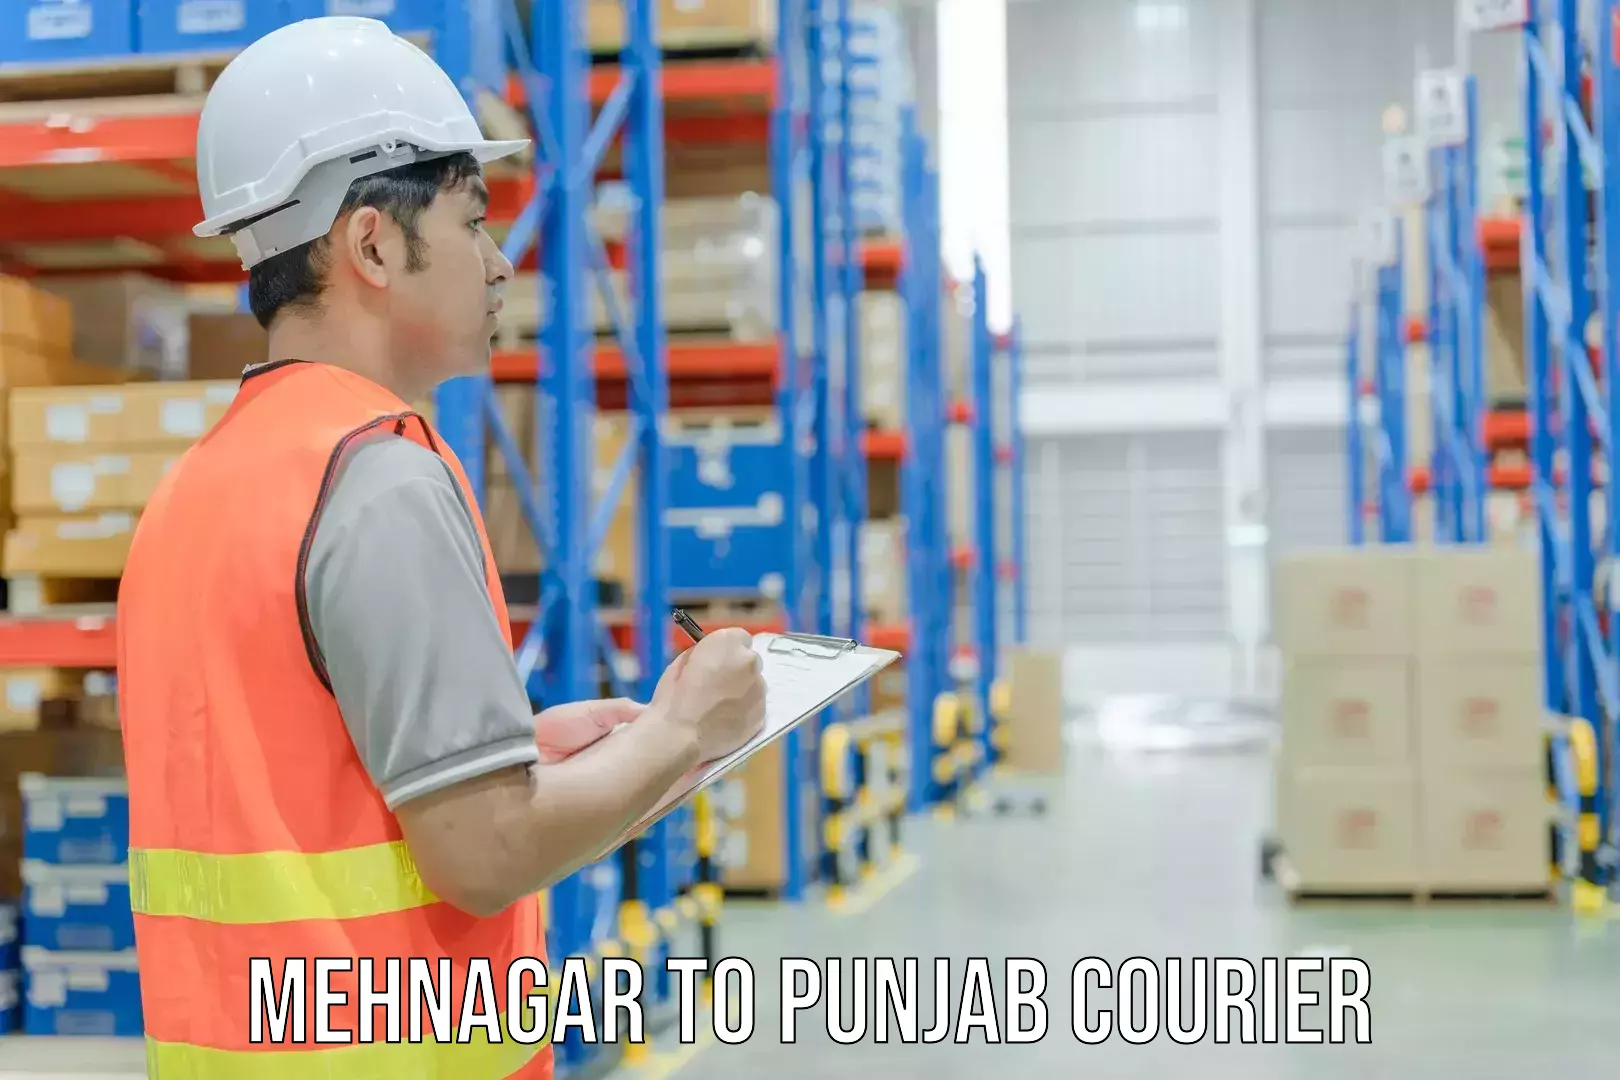 Courier service innovation Mehnagar to Amritsar